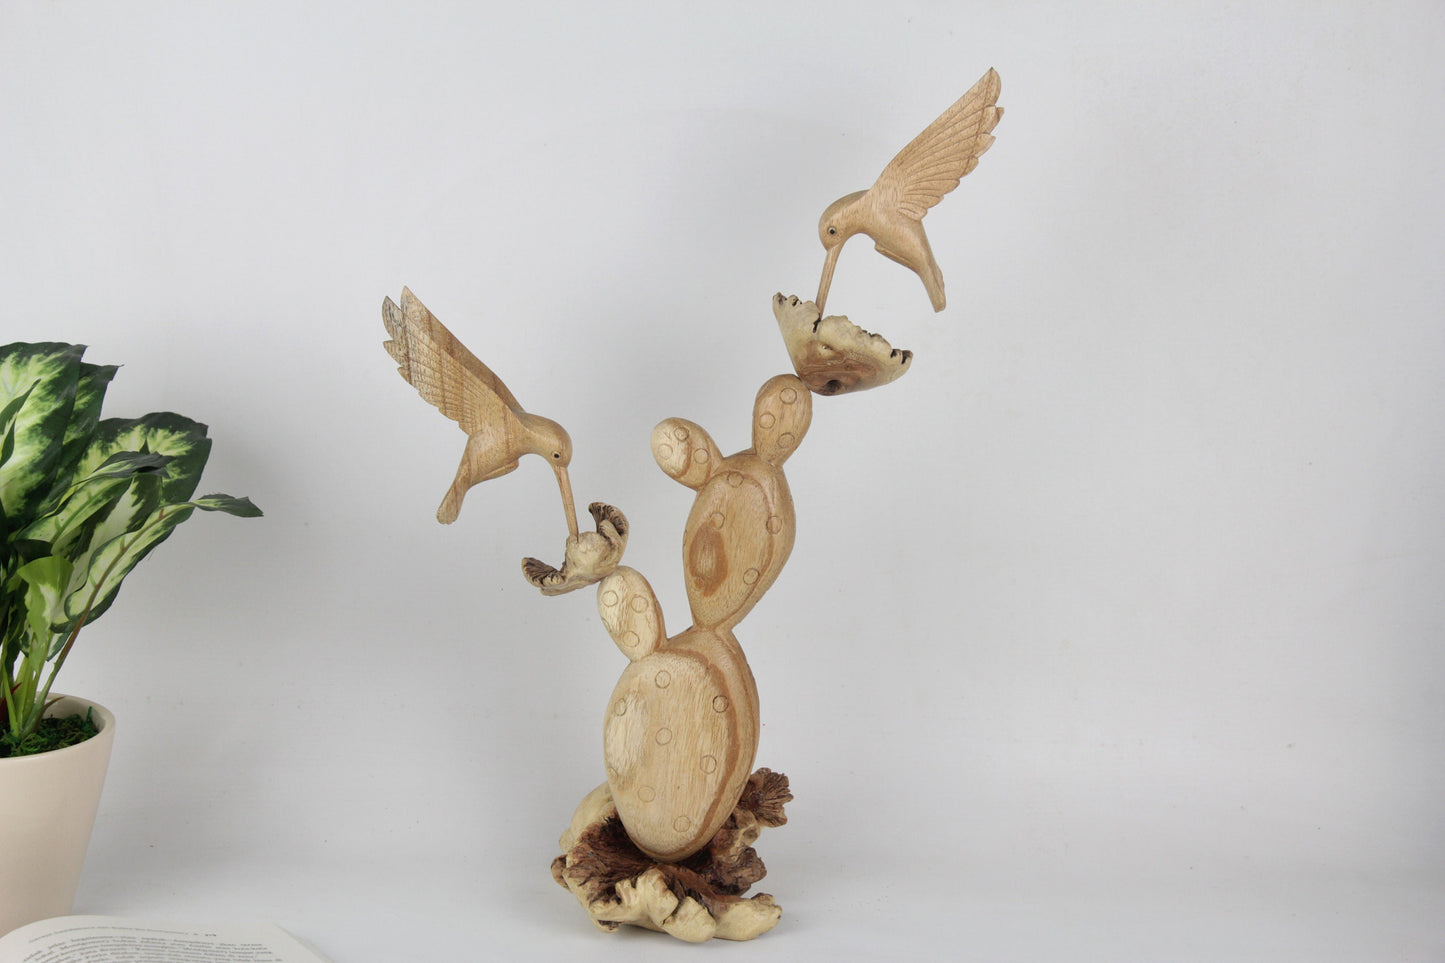 Handmade Wooden Cactus with Wooden Hummingbird